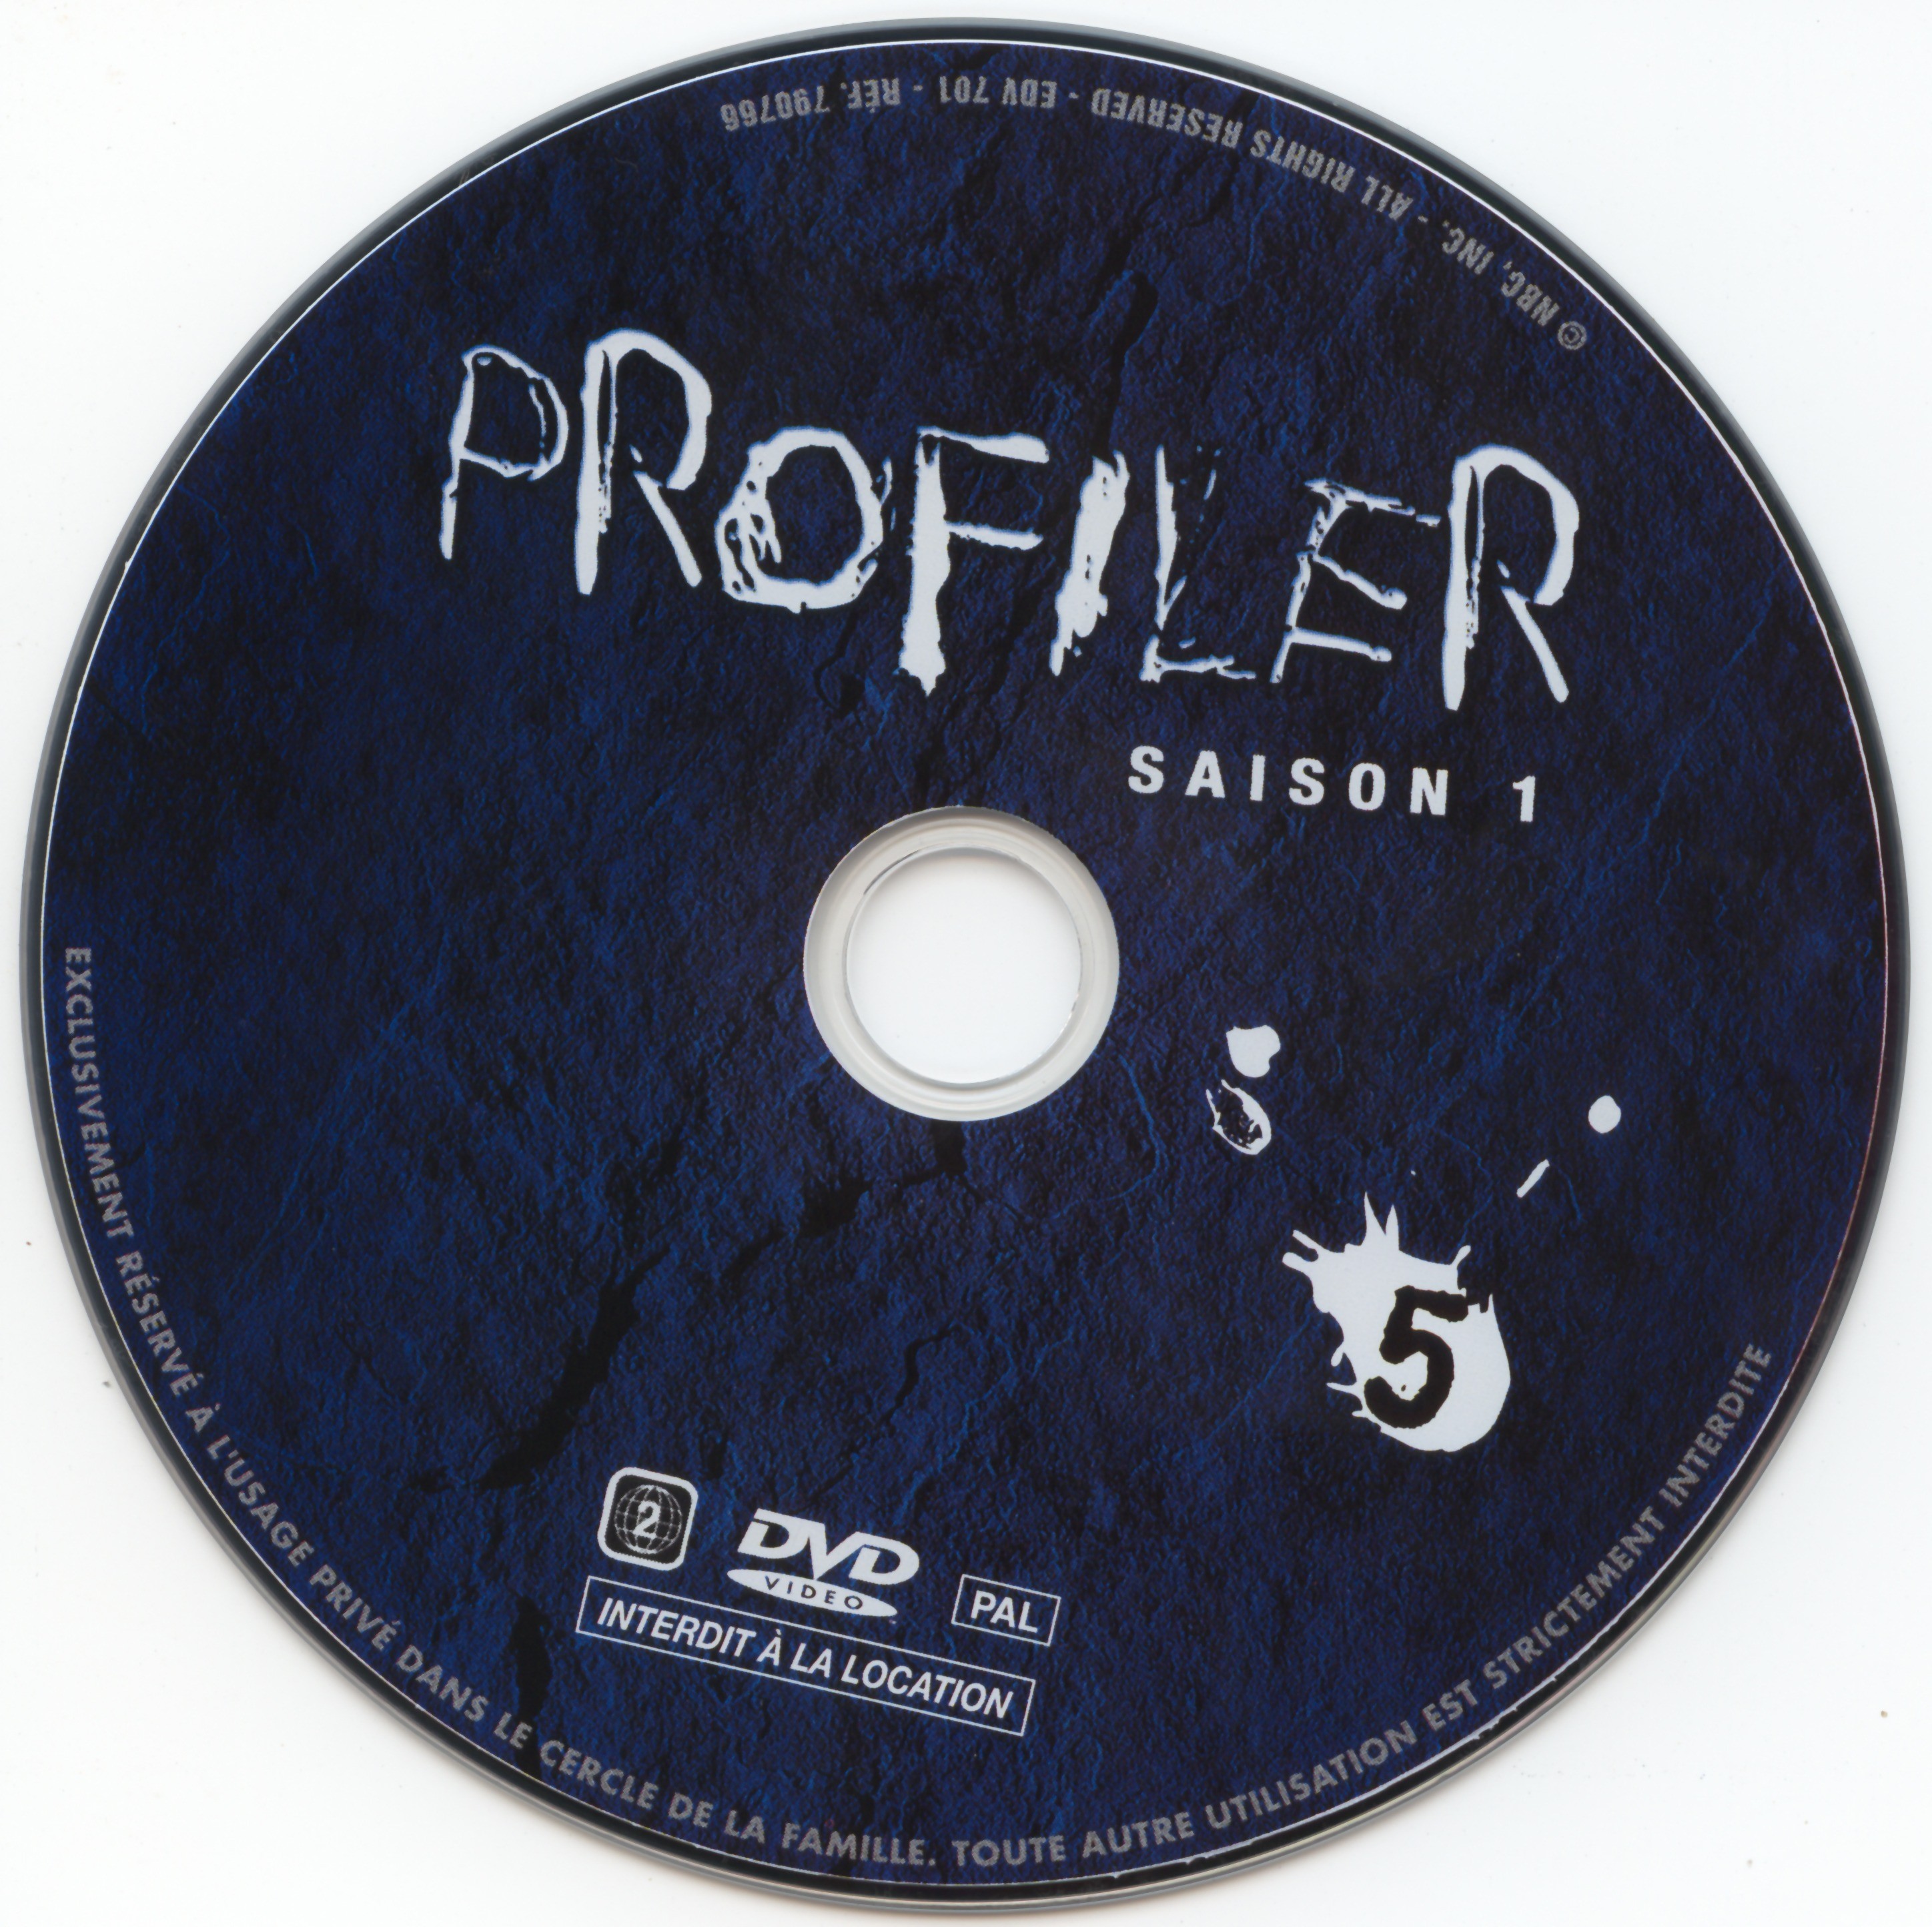 Profiler saison 1 DVD 5